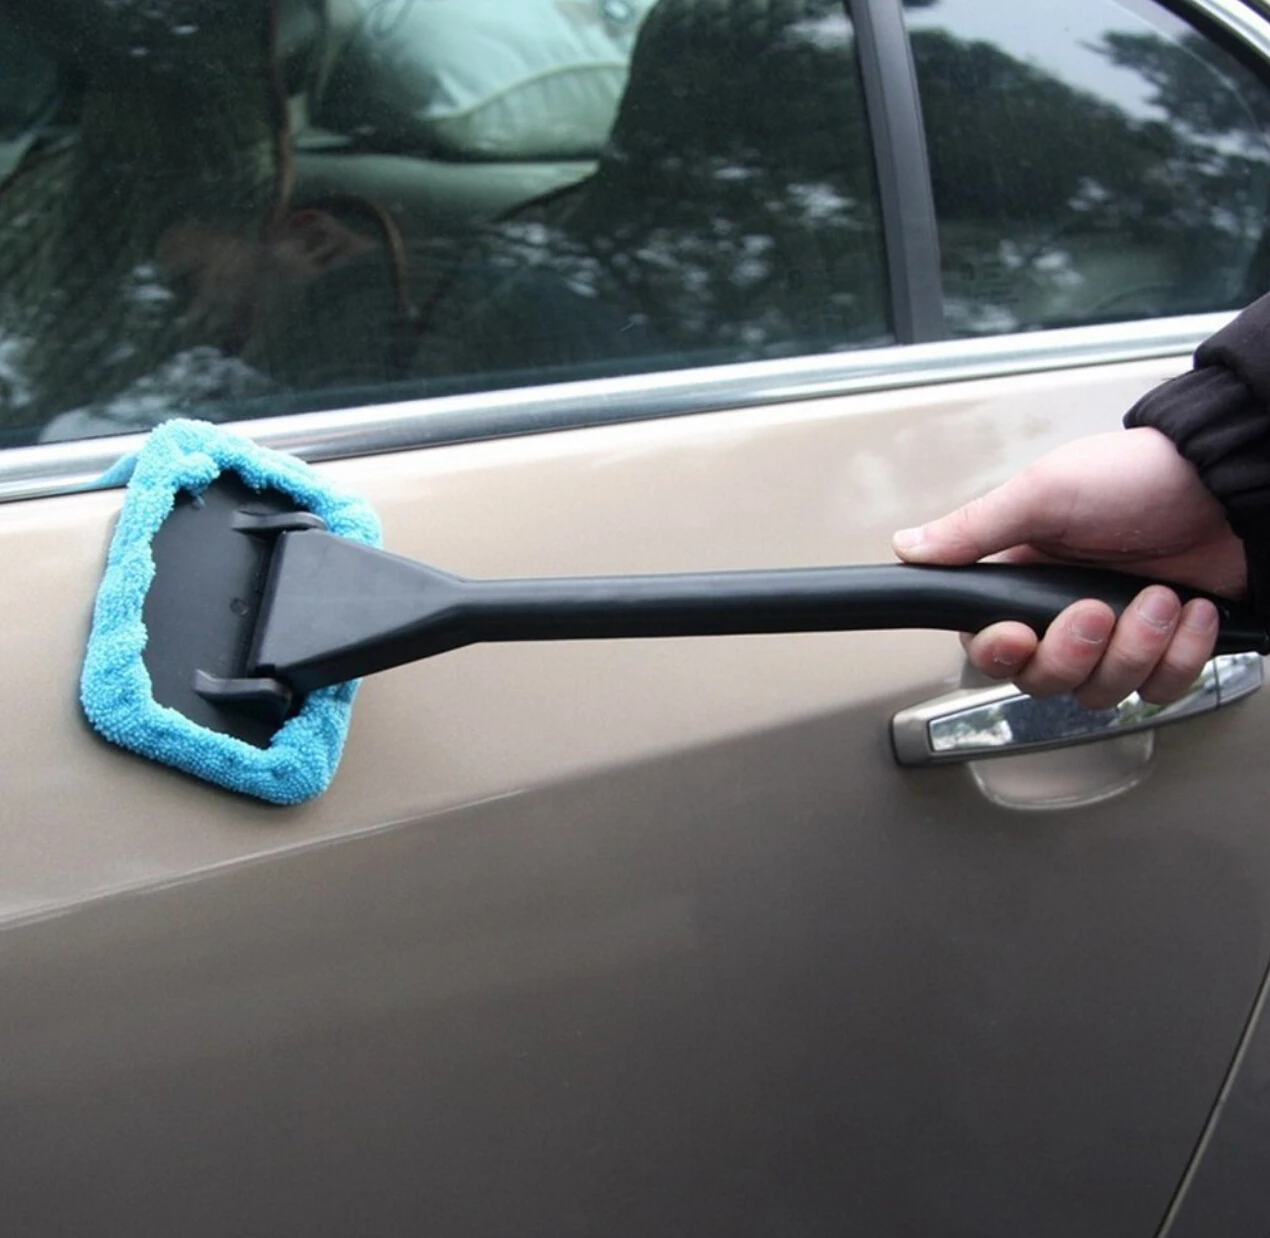 Автомобильный очиститель окон, щетка для мытья автомобиля, уход за dacia duster golf mk5 citroen c4 picasso bmw x5 e70 mazda 3 jeep renegade passat b8